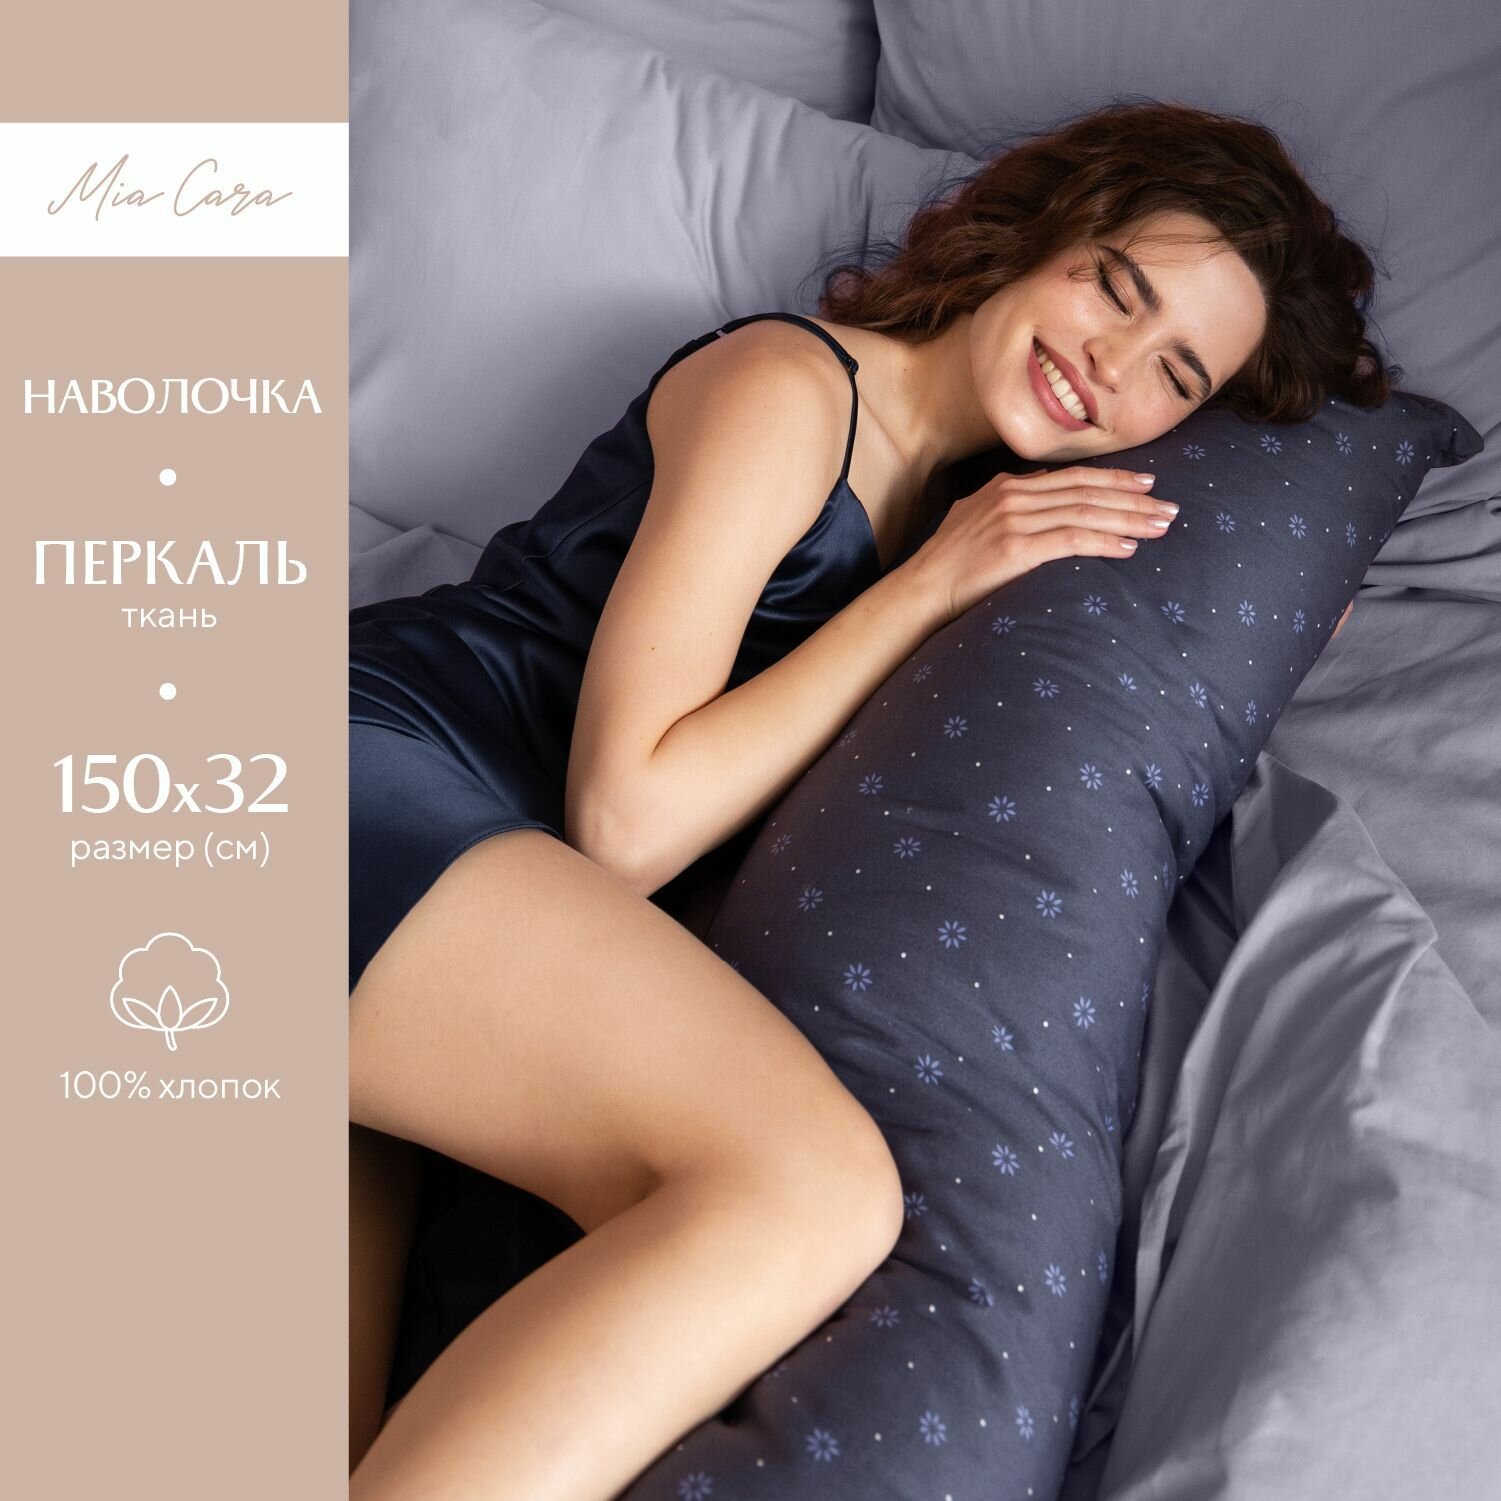 Наволочка 32х150 Mia Cara для подушки-обнимашки перкаль / наволочка на подушку для беременных Флоренция 37061-6